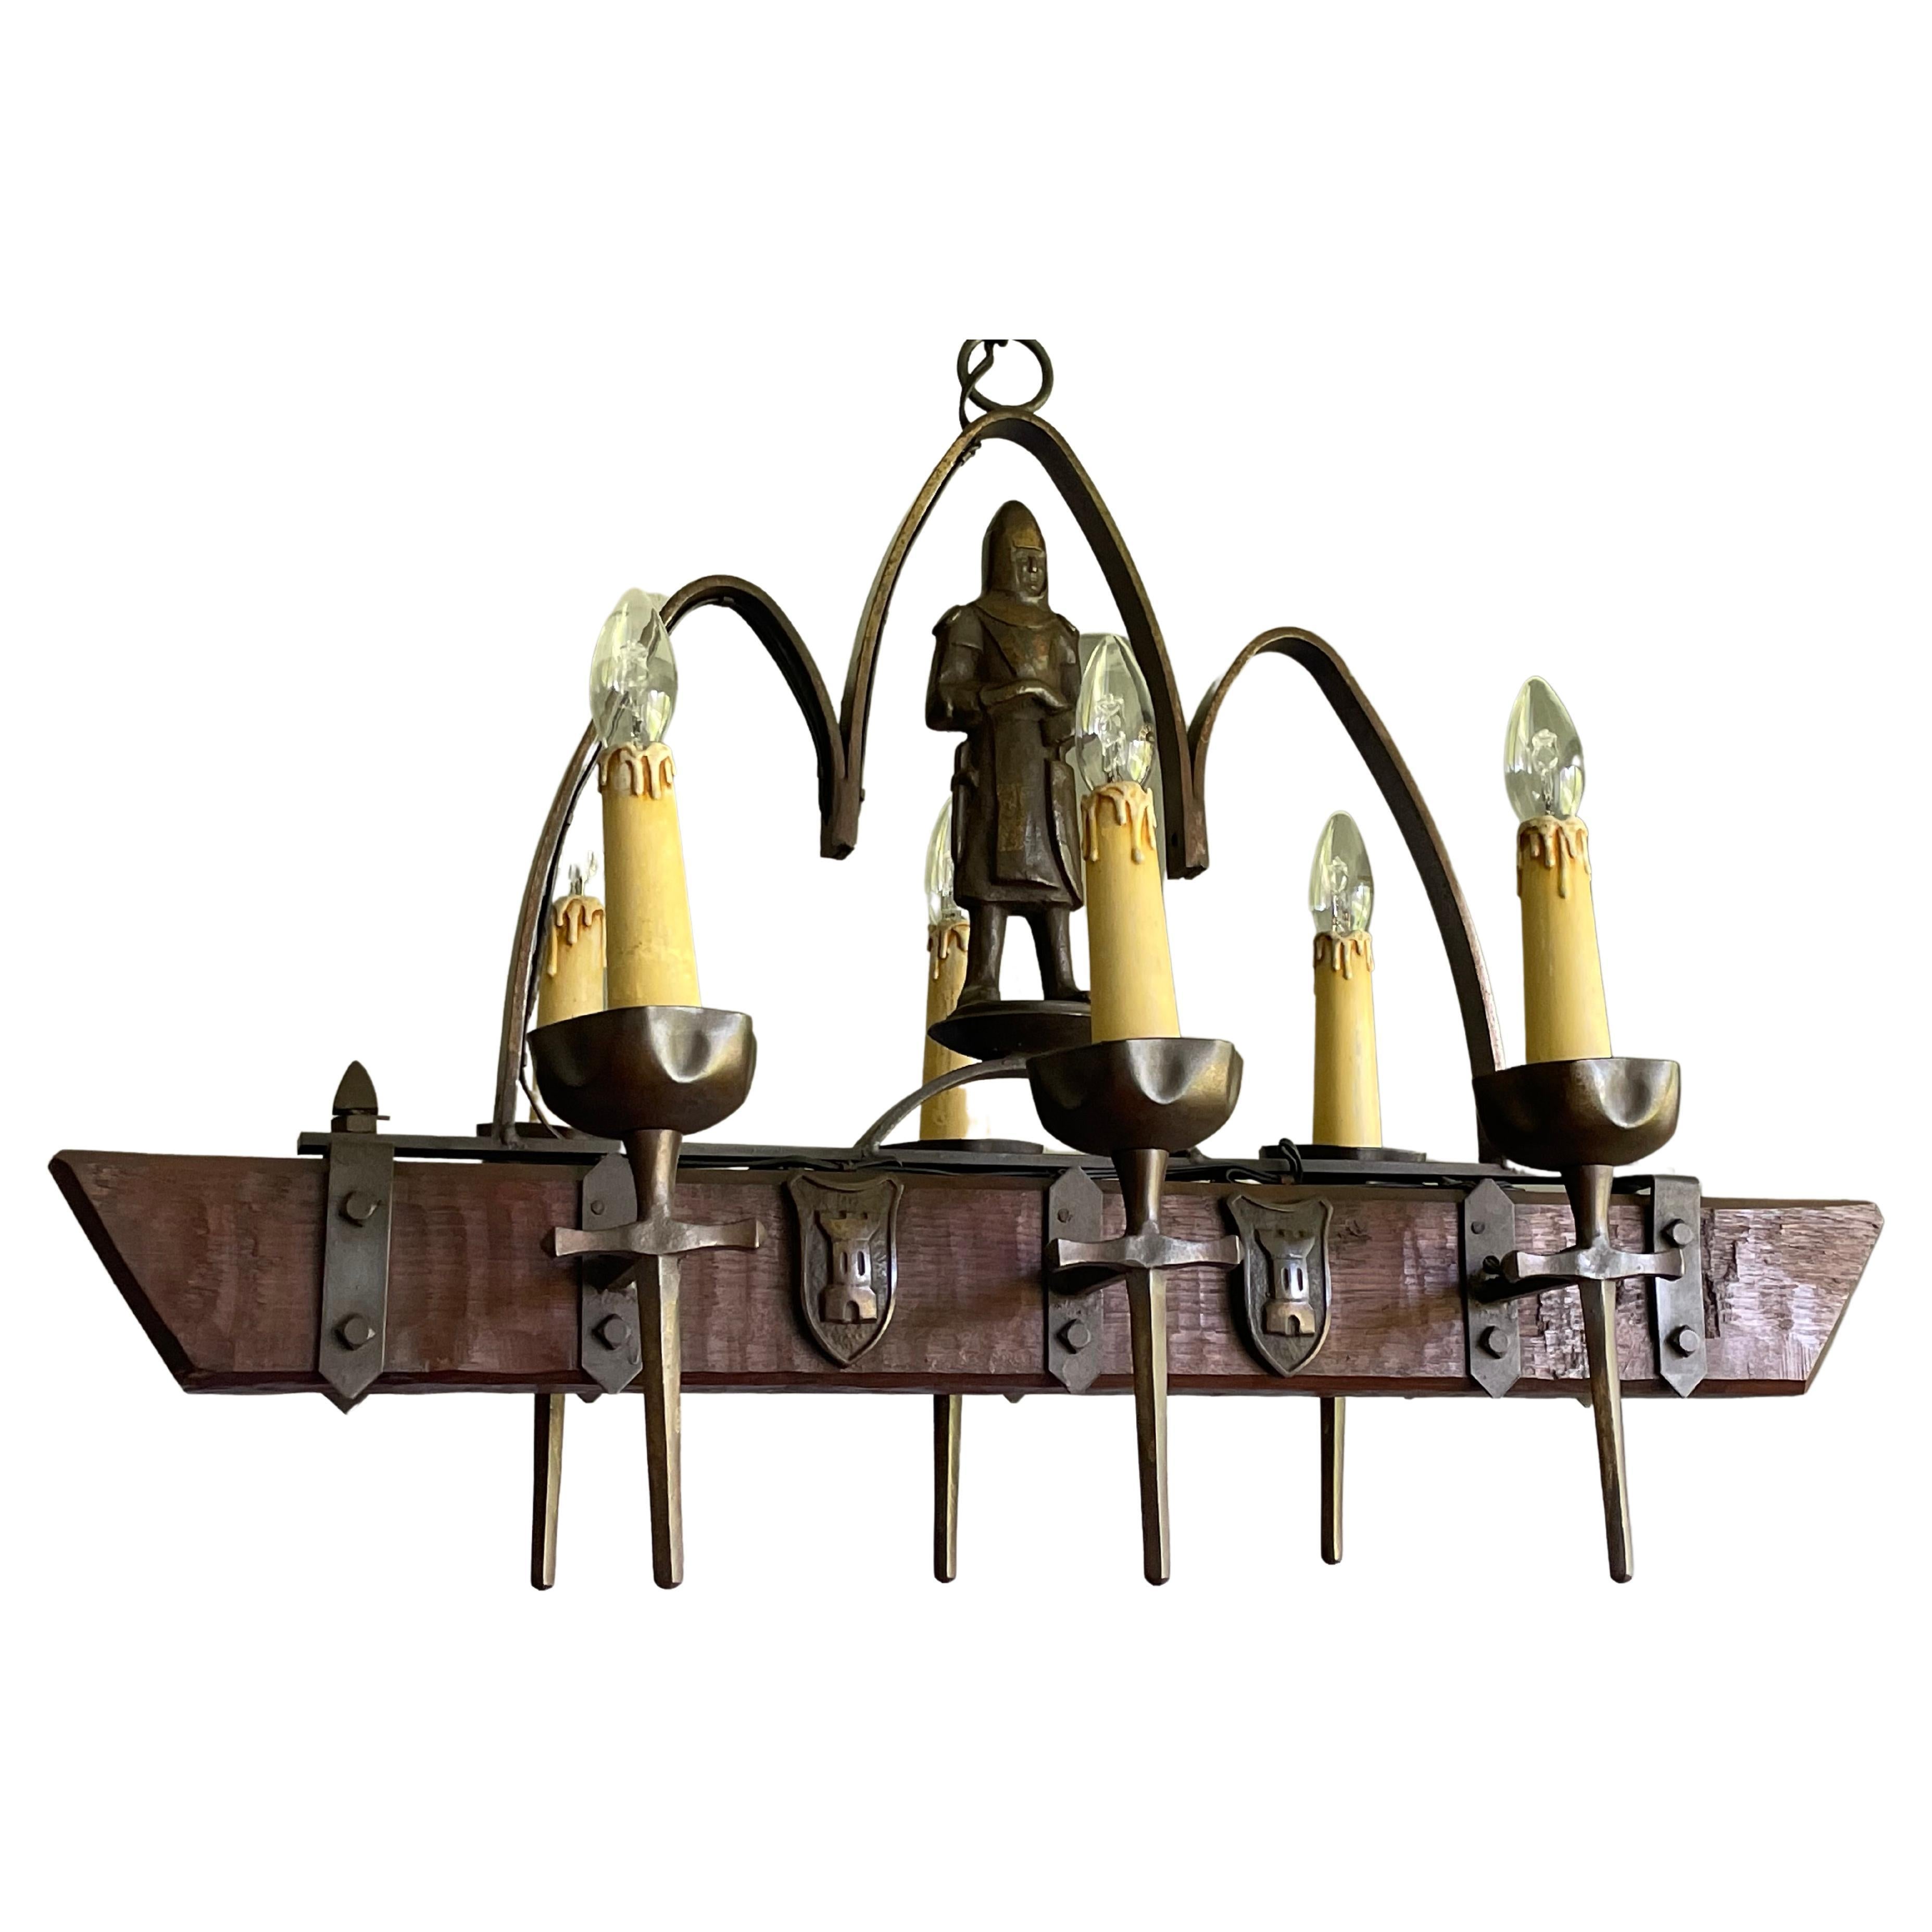 Seltener Sechs-Licht-Kronleuchter im gotischen Stil mit bronzierten Rittern und Schwertern und Wappen